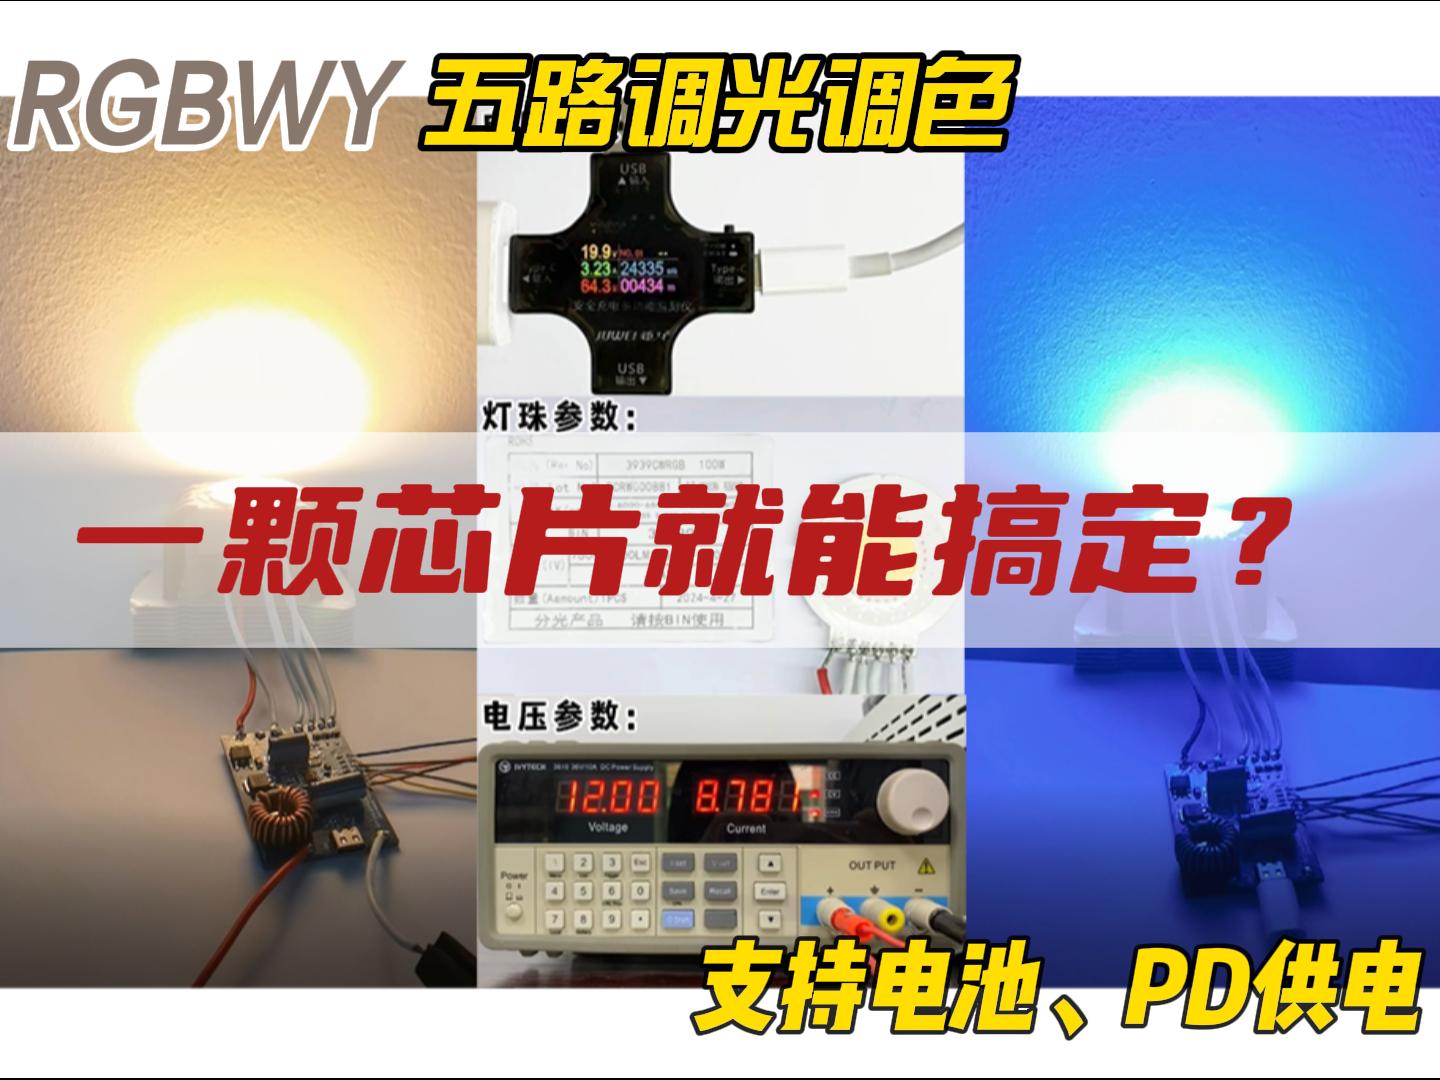  #电子技术 #电路知识 #pcb设计 #人工智能 #led灯 
FP7208升压恒流无频闪RGBWY五路调光